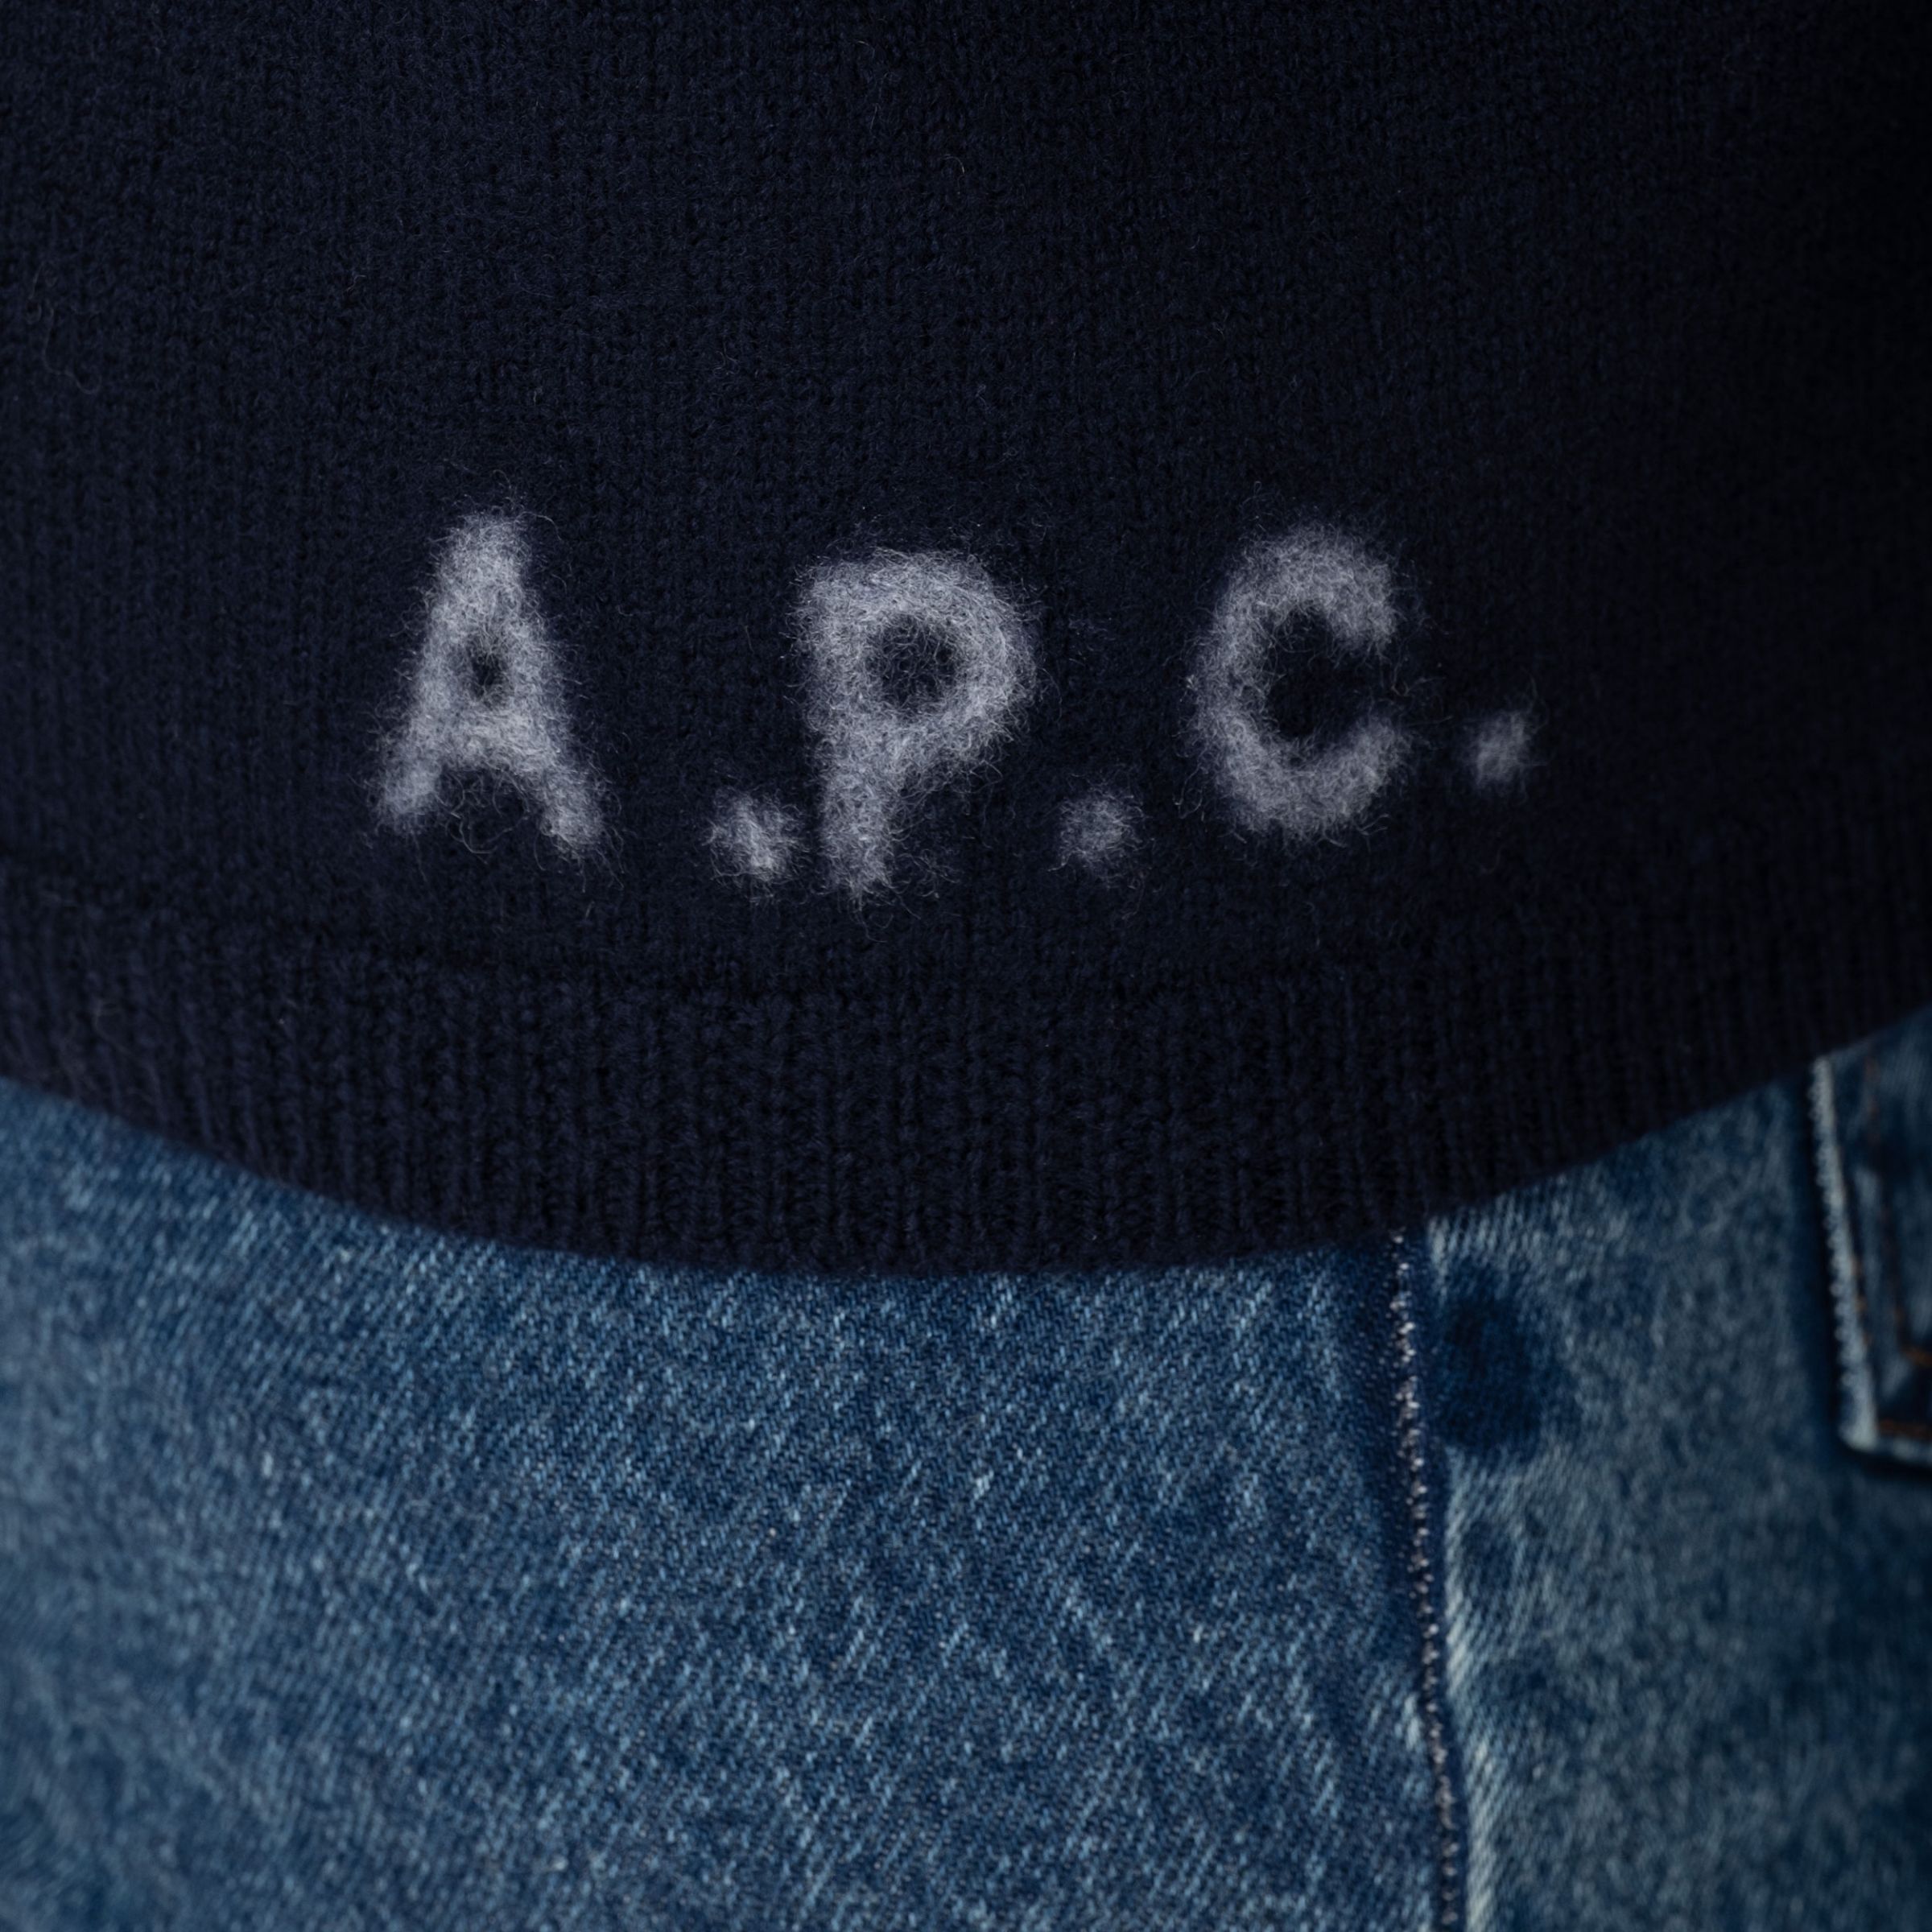 Пуловер A.P.C. Walter  темно-синий